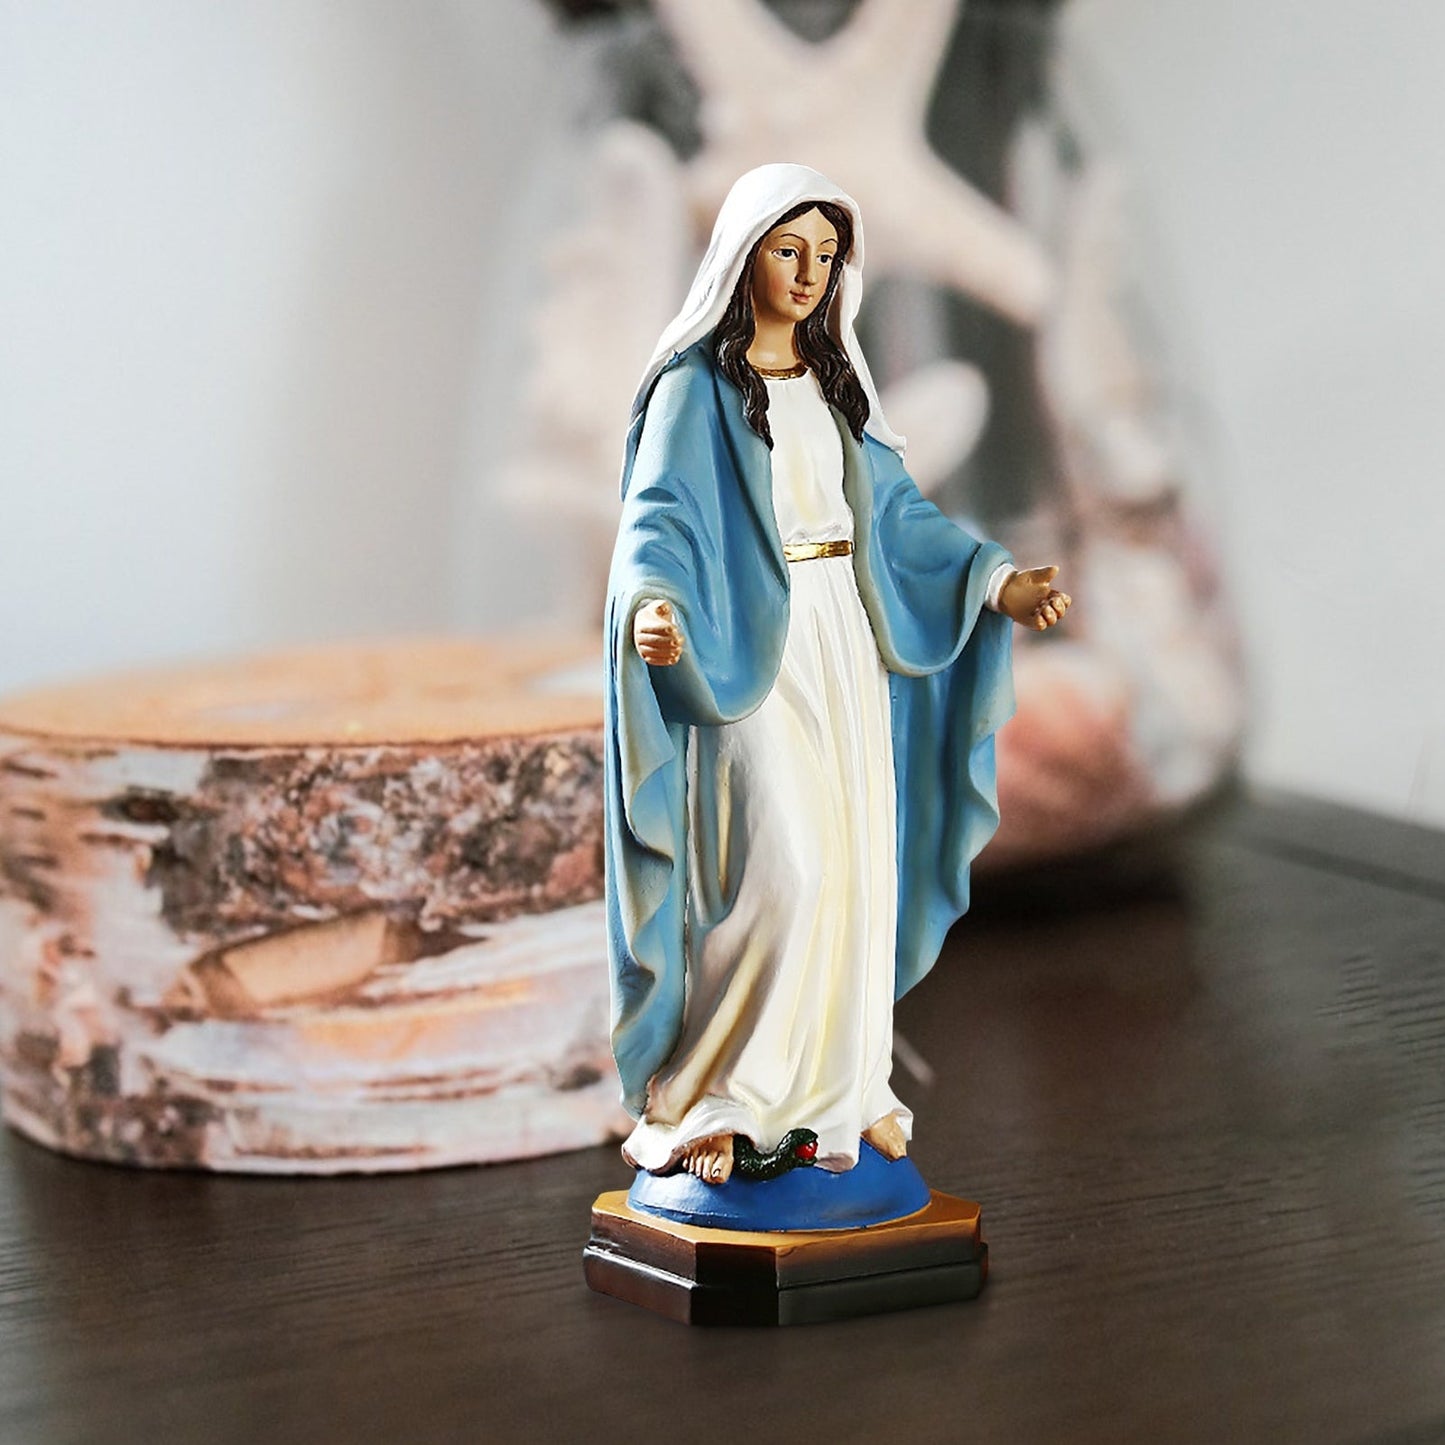 פסל מרים בתולה 8.8 גבירתנו מגס פסל הבתולה מרי מבורכת פסל שרף פסלון אמא מדונה קתולית דתית